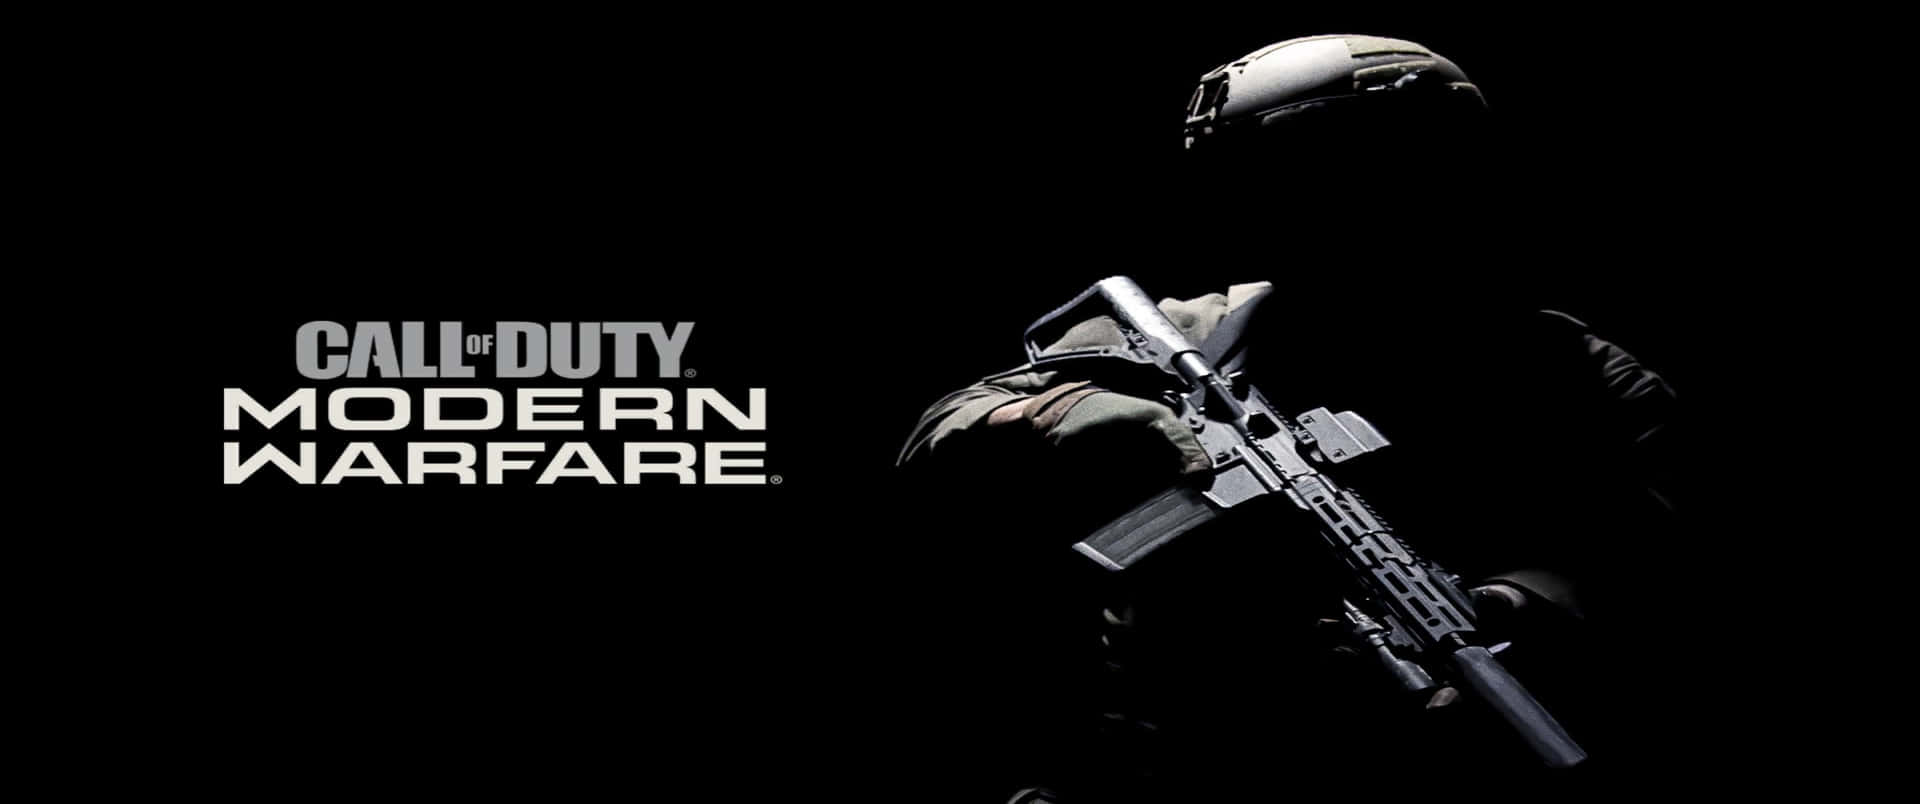 Siluetacon Título 3440x1440p Fondo De Escritorio De Call Of Duty Modern Warfare